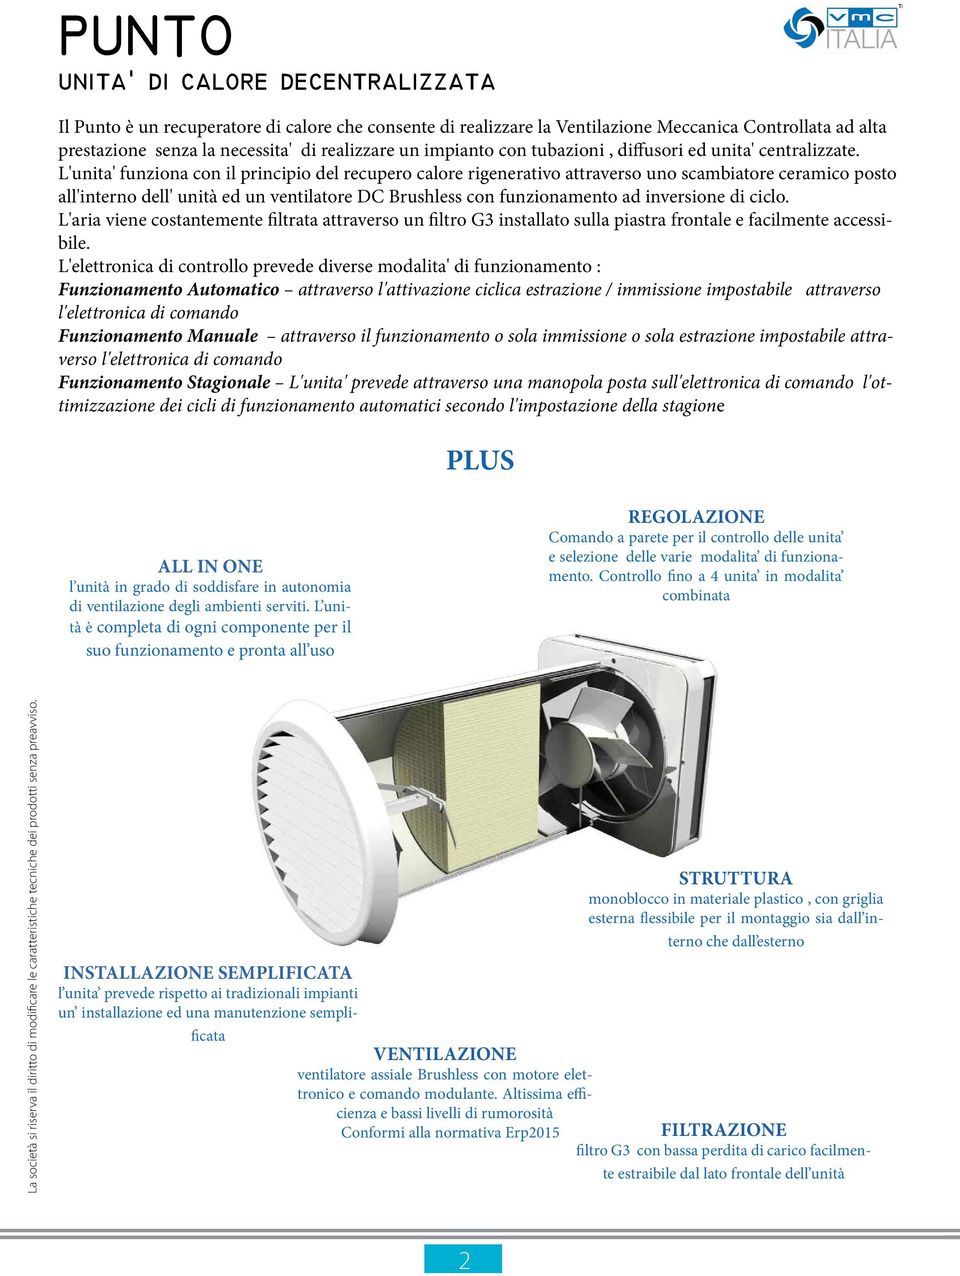 L'unita' funziona con il principio del recupero calore rigenerativo attraverso uno scambiatore ceramico posto all'interno dell' unità ed un ventilatore DC Brushless con funzionamento ad inversione di